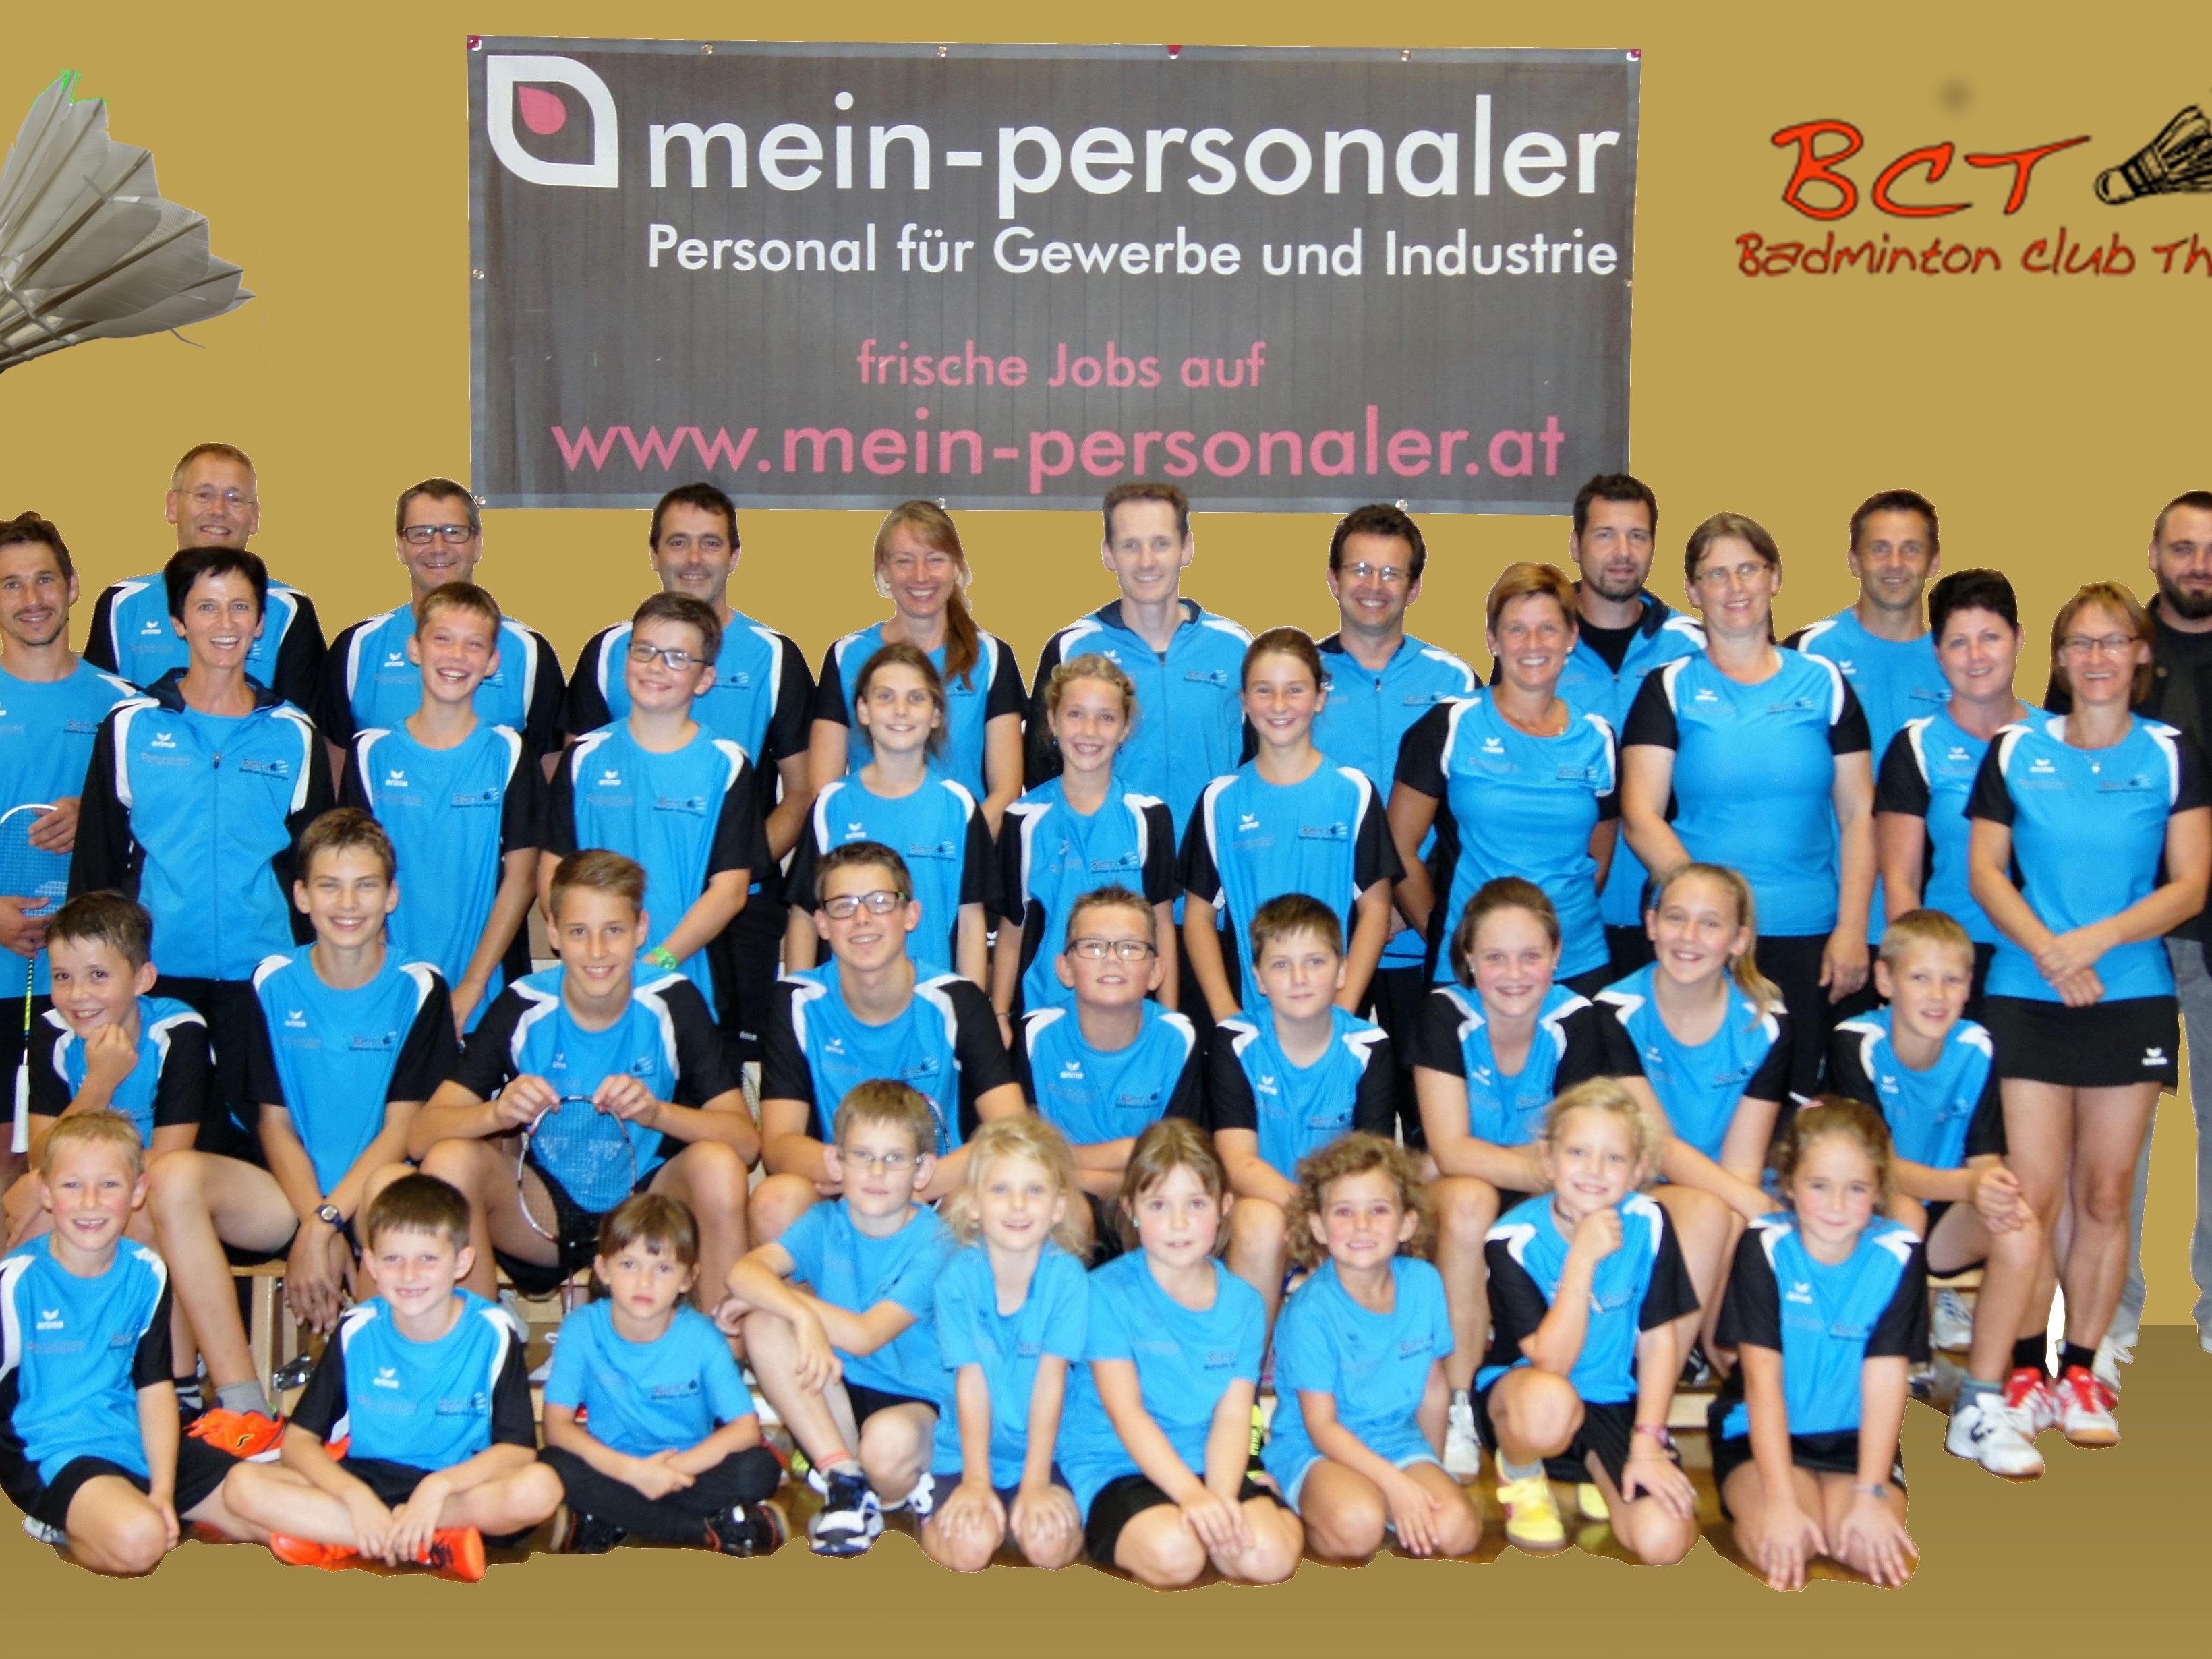 Die Mitglieder des Badmintonclub Thüringen strahlen im neuen Outfit